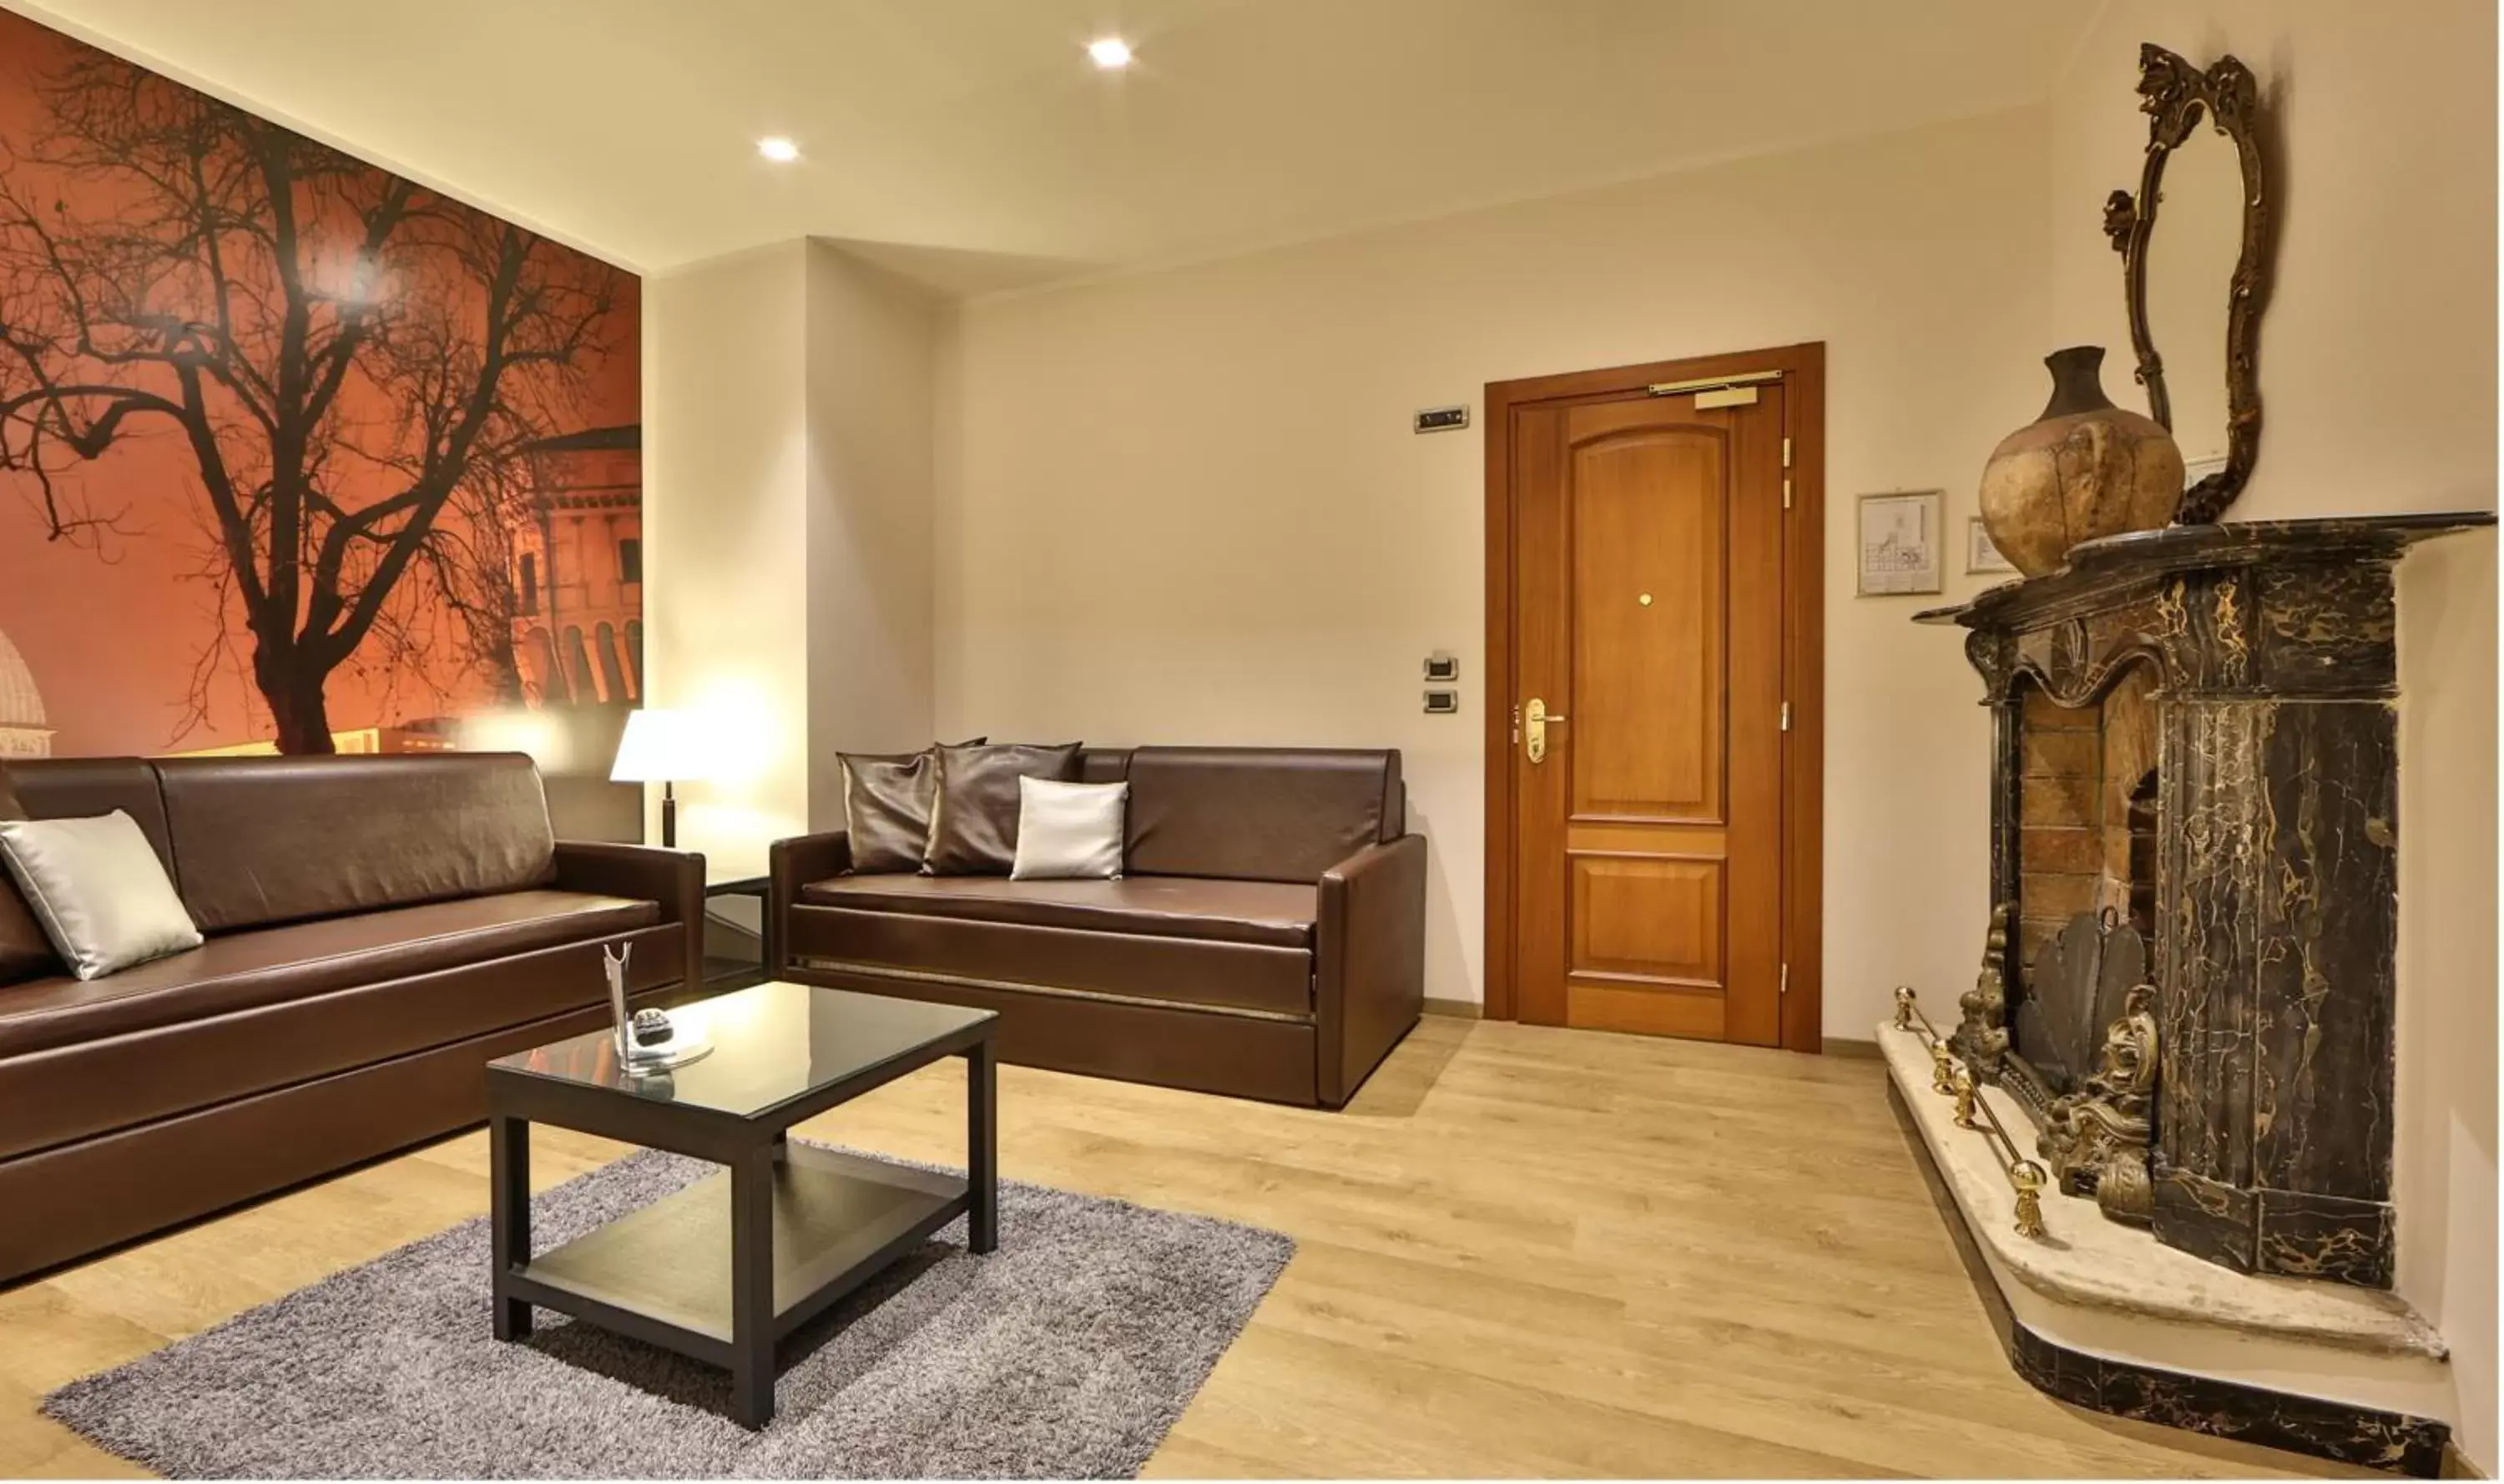 Bedroom, Seating Area in Best Western Plus Hotel Genova